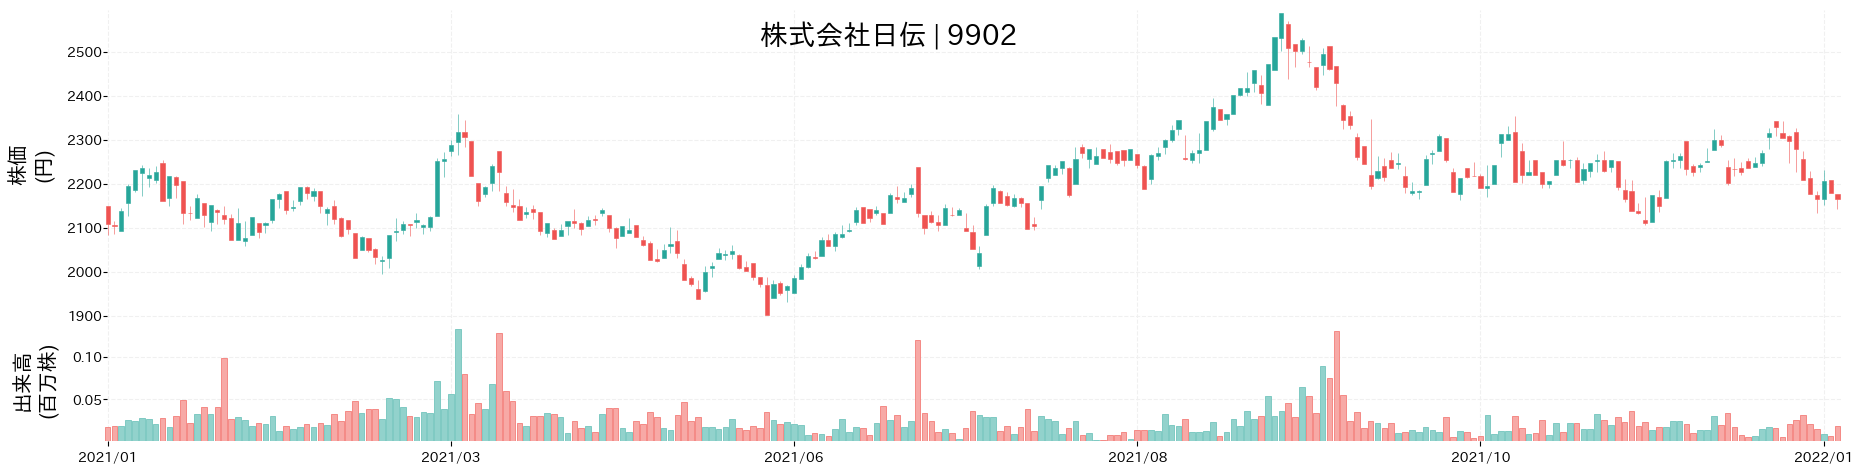 日伝の株価推移(2021)